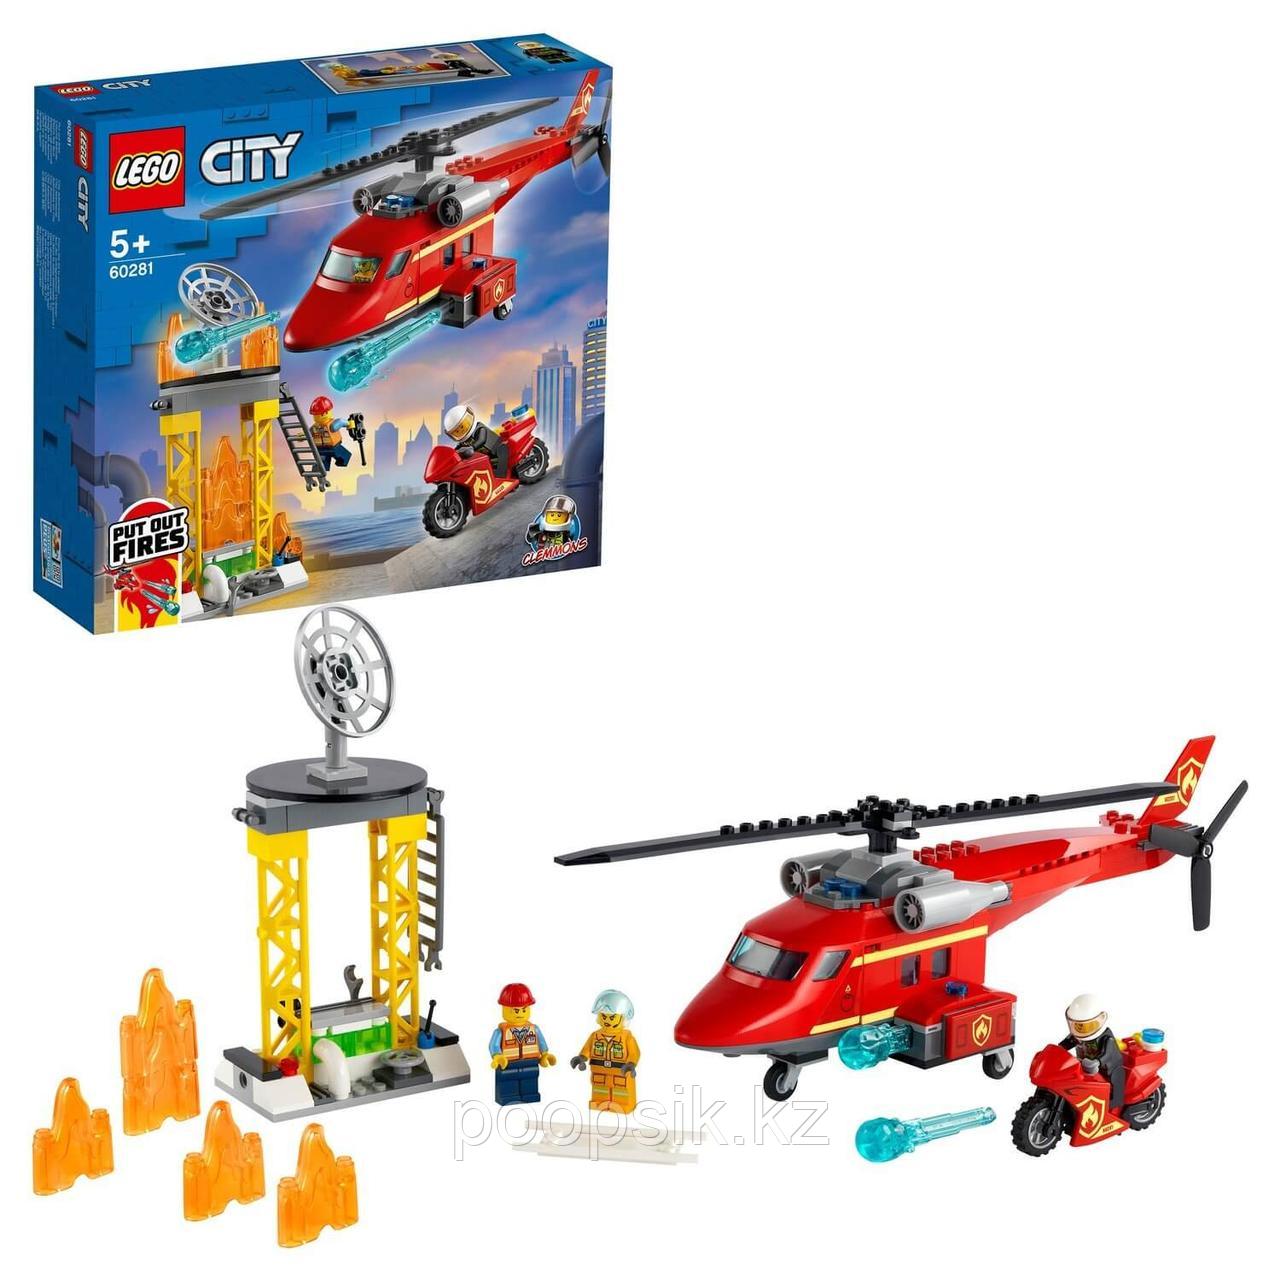 Lego City Fire Спасательный пожарный вертолёт 60281